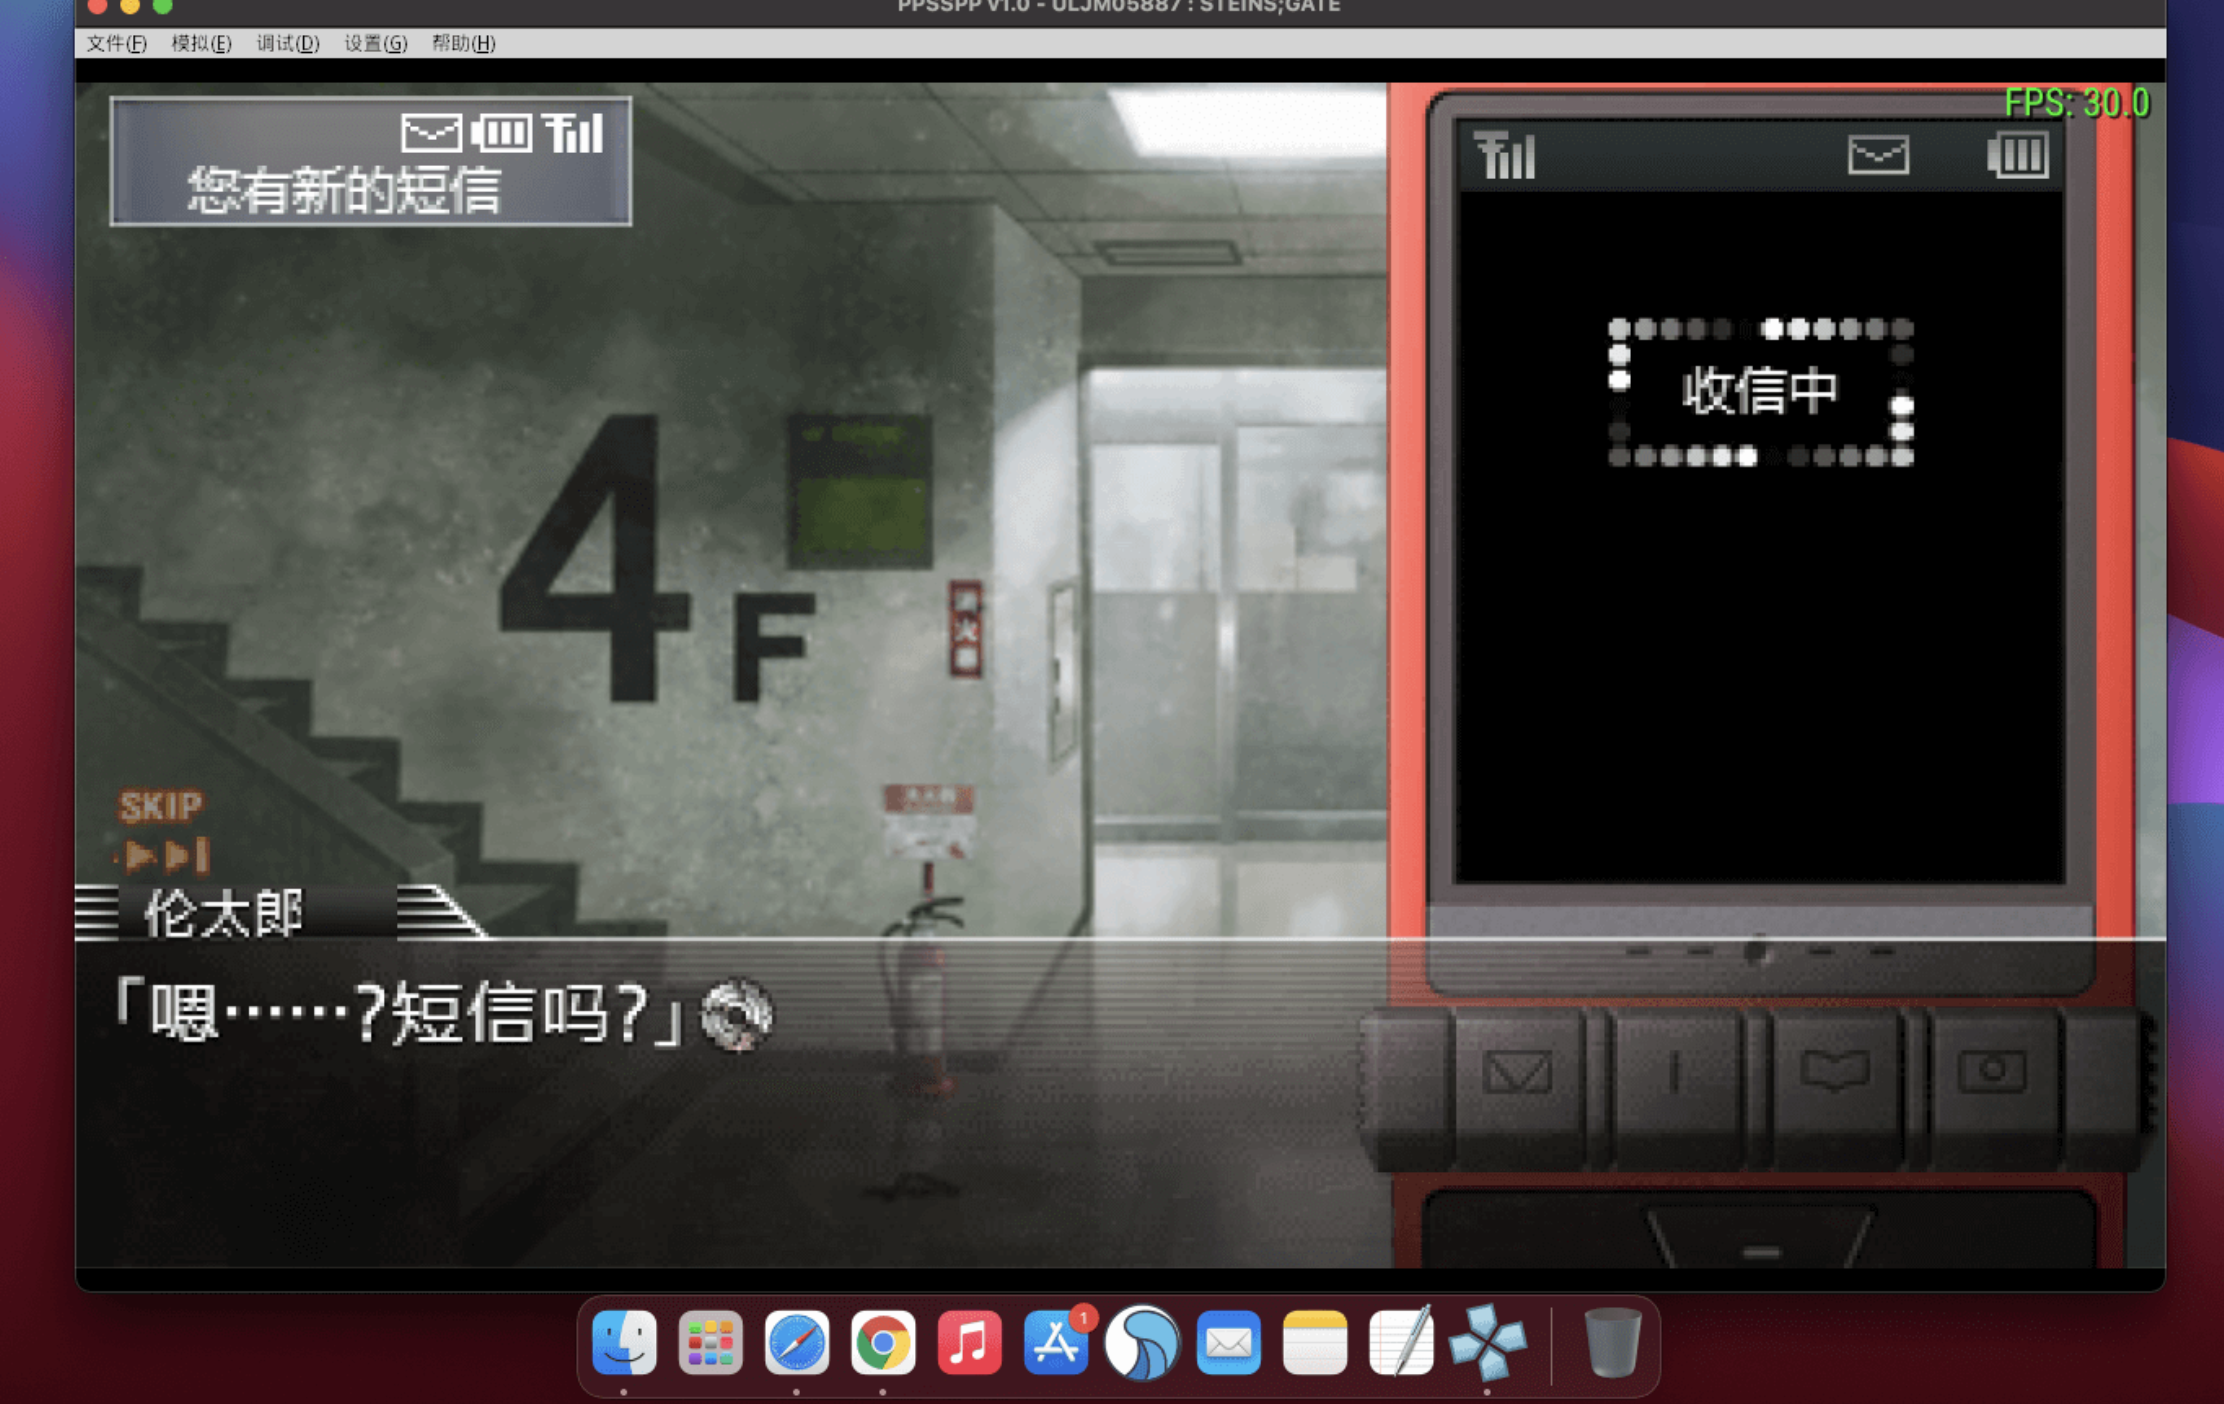 命运石之门 for Mac STEINS;GATE 中文移植版 苹果电脑